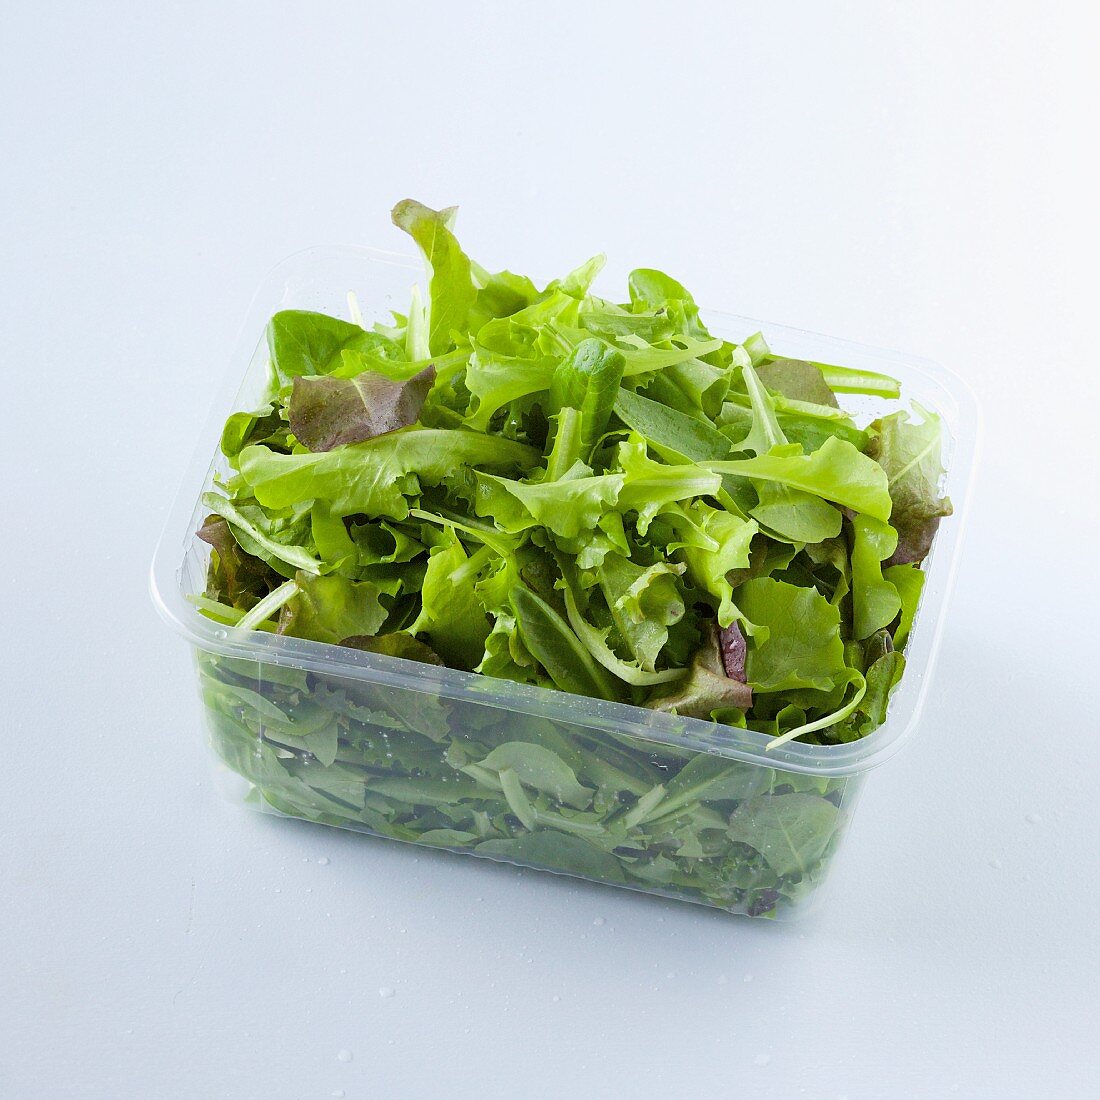 Lettuce in a plastic punnet